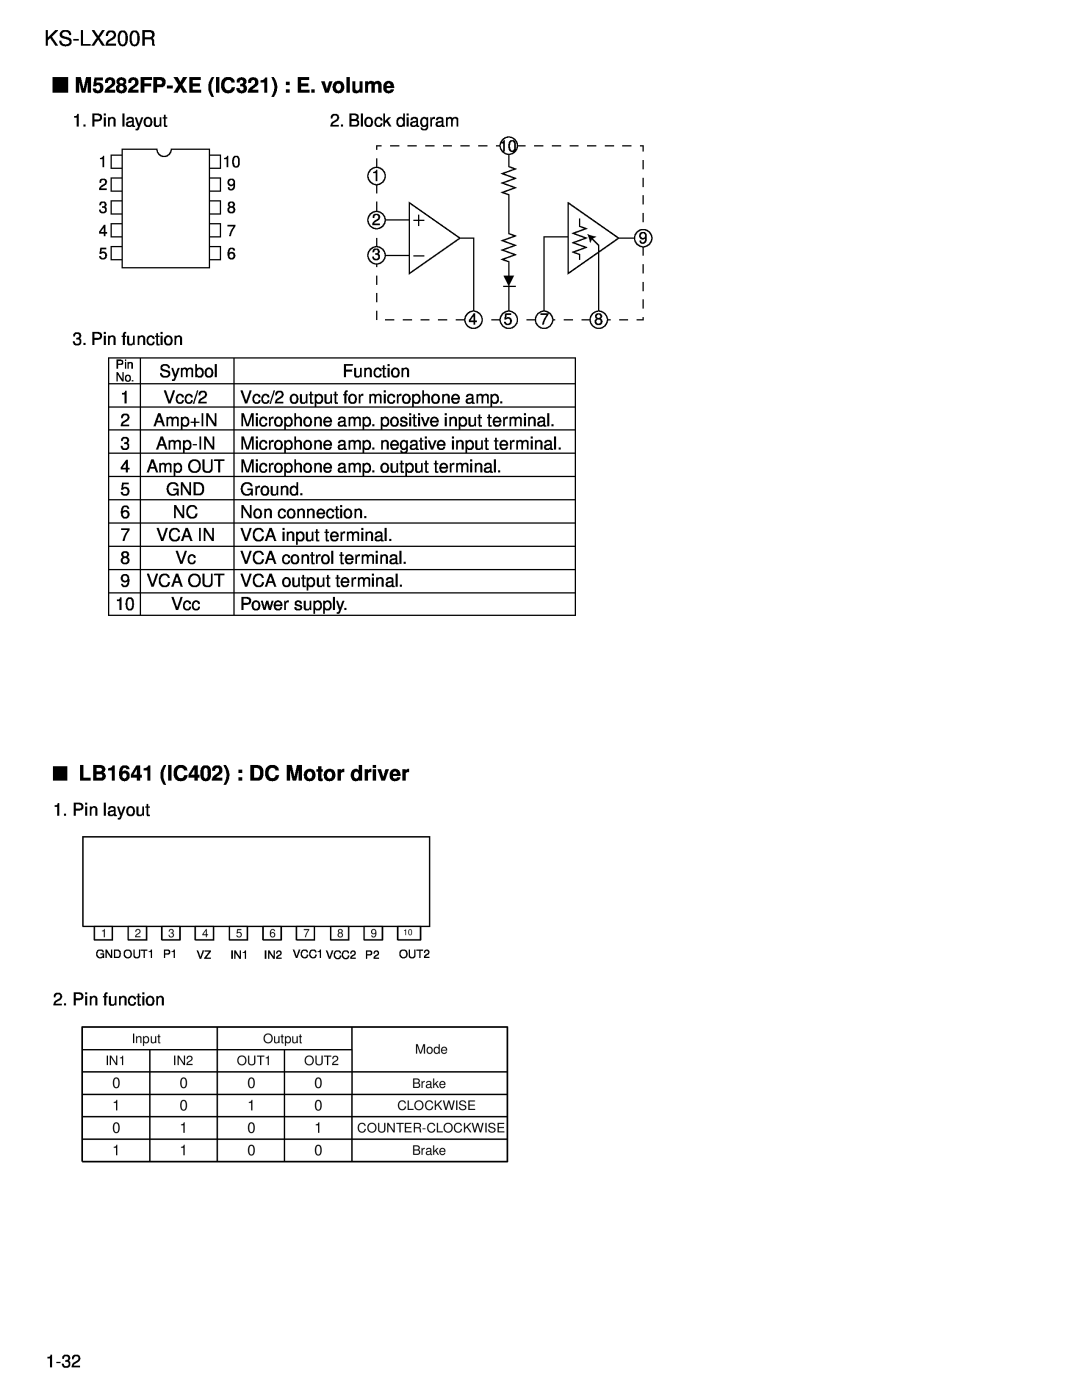 JVC KS-LX200R service manual M5282FP-XEIC321 E. volume, LB1641 IC402 : DC Motor driver 